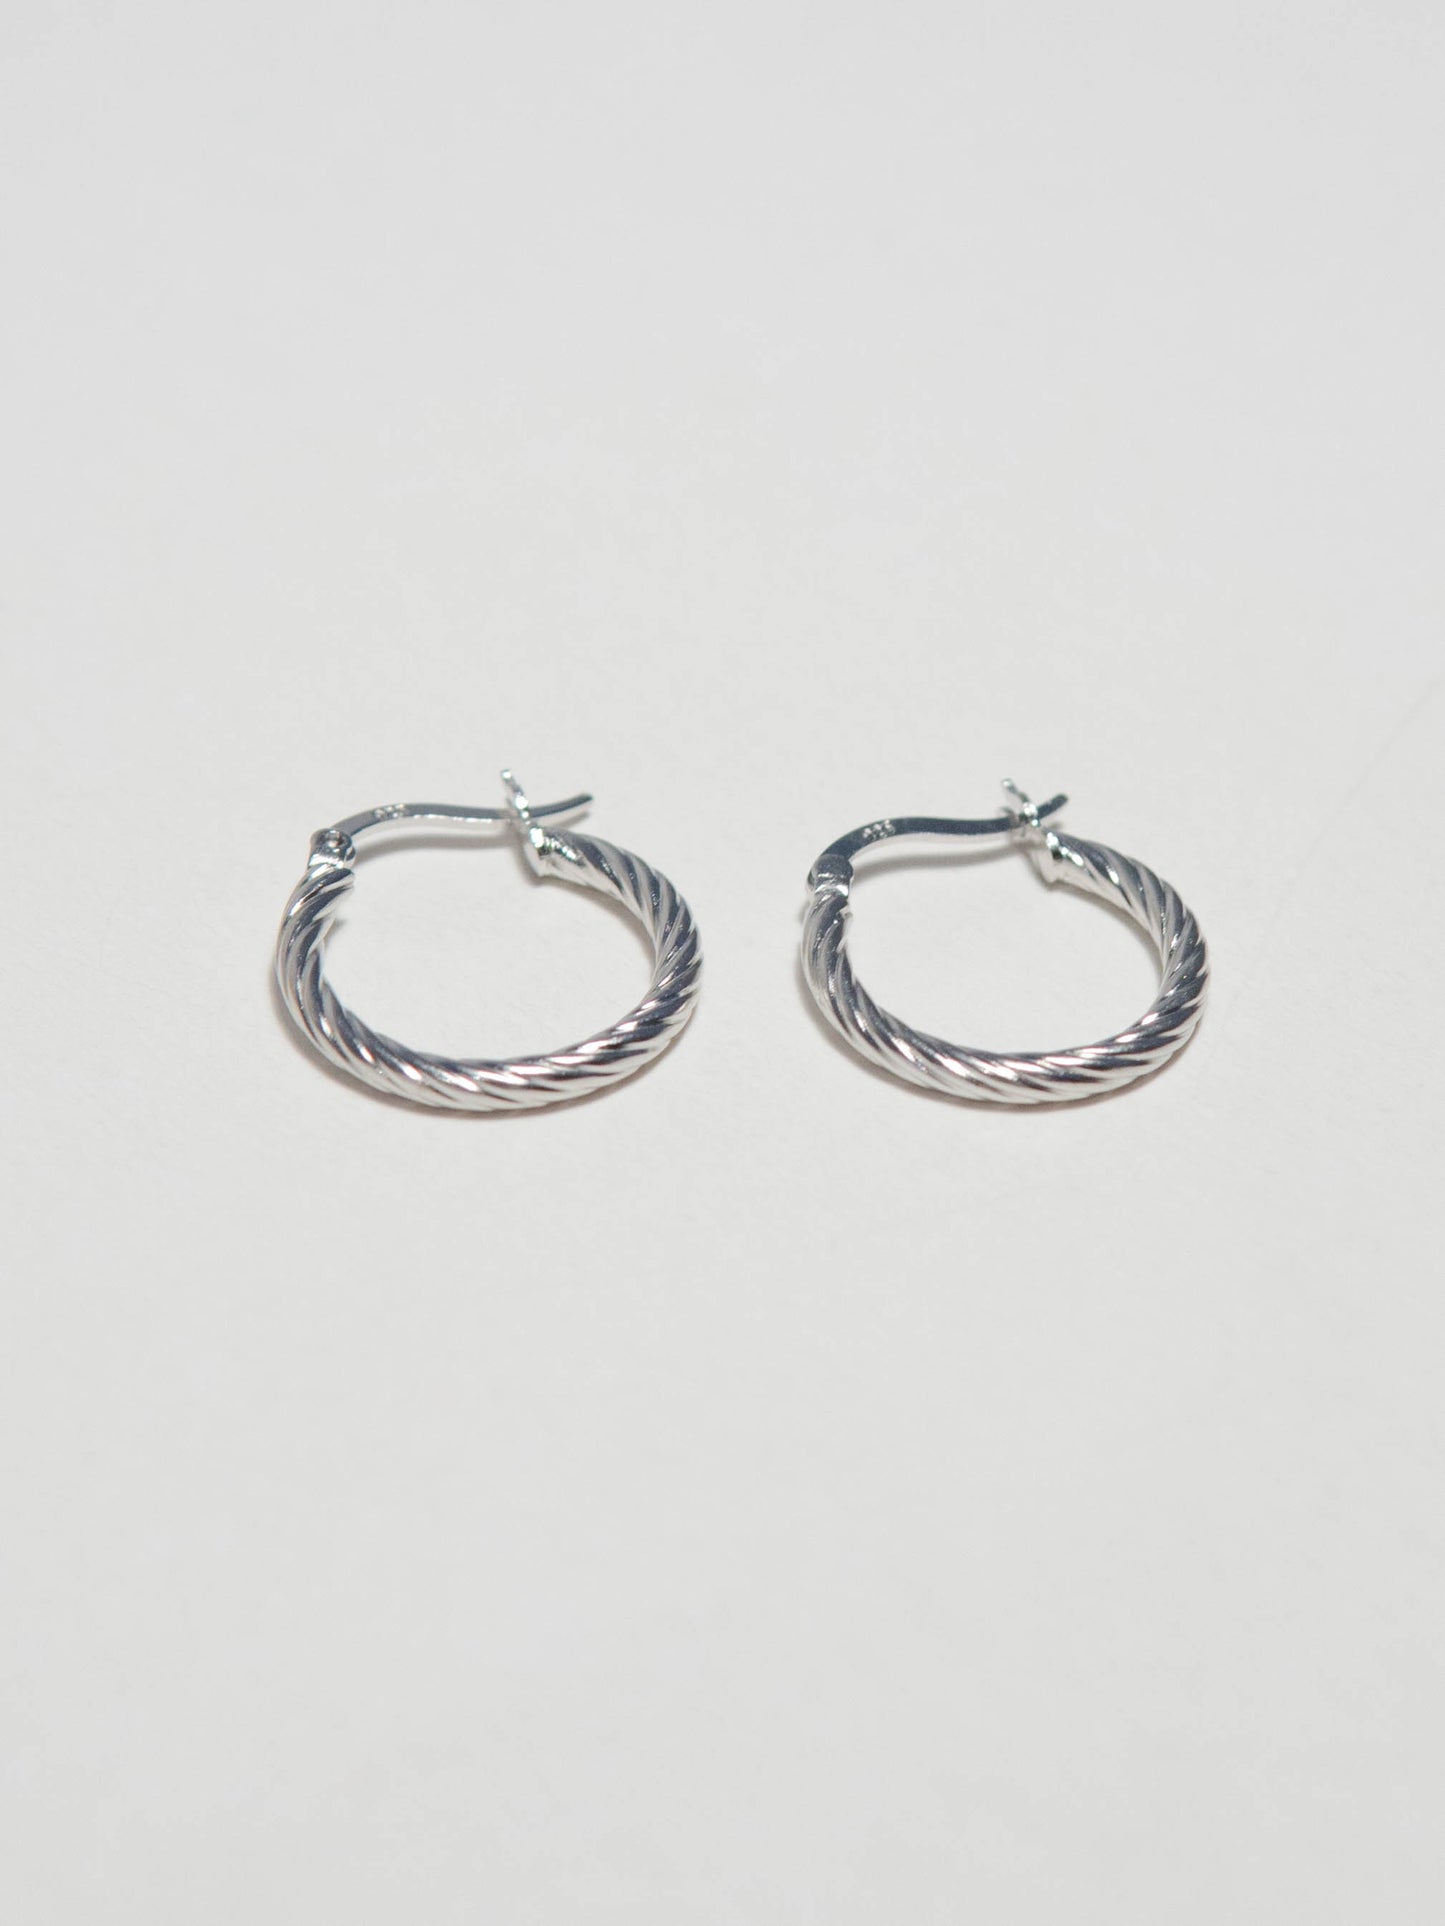 Twist earrings in Sterling Silver